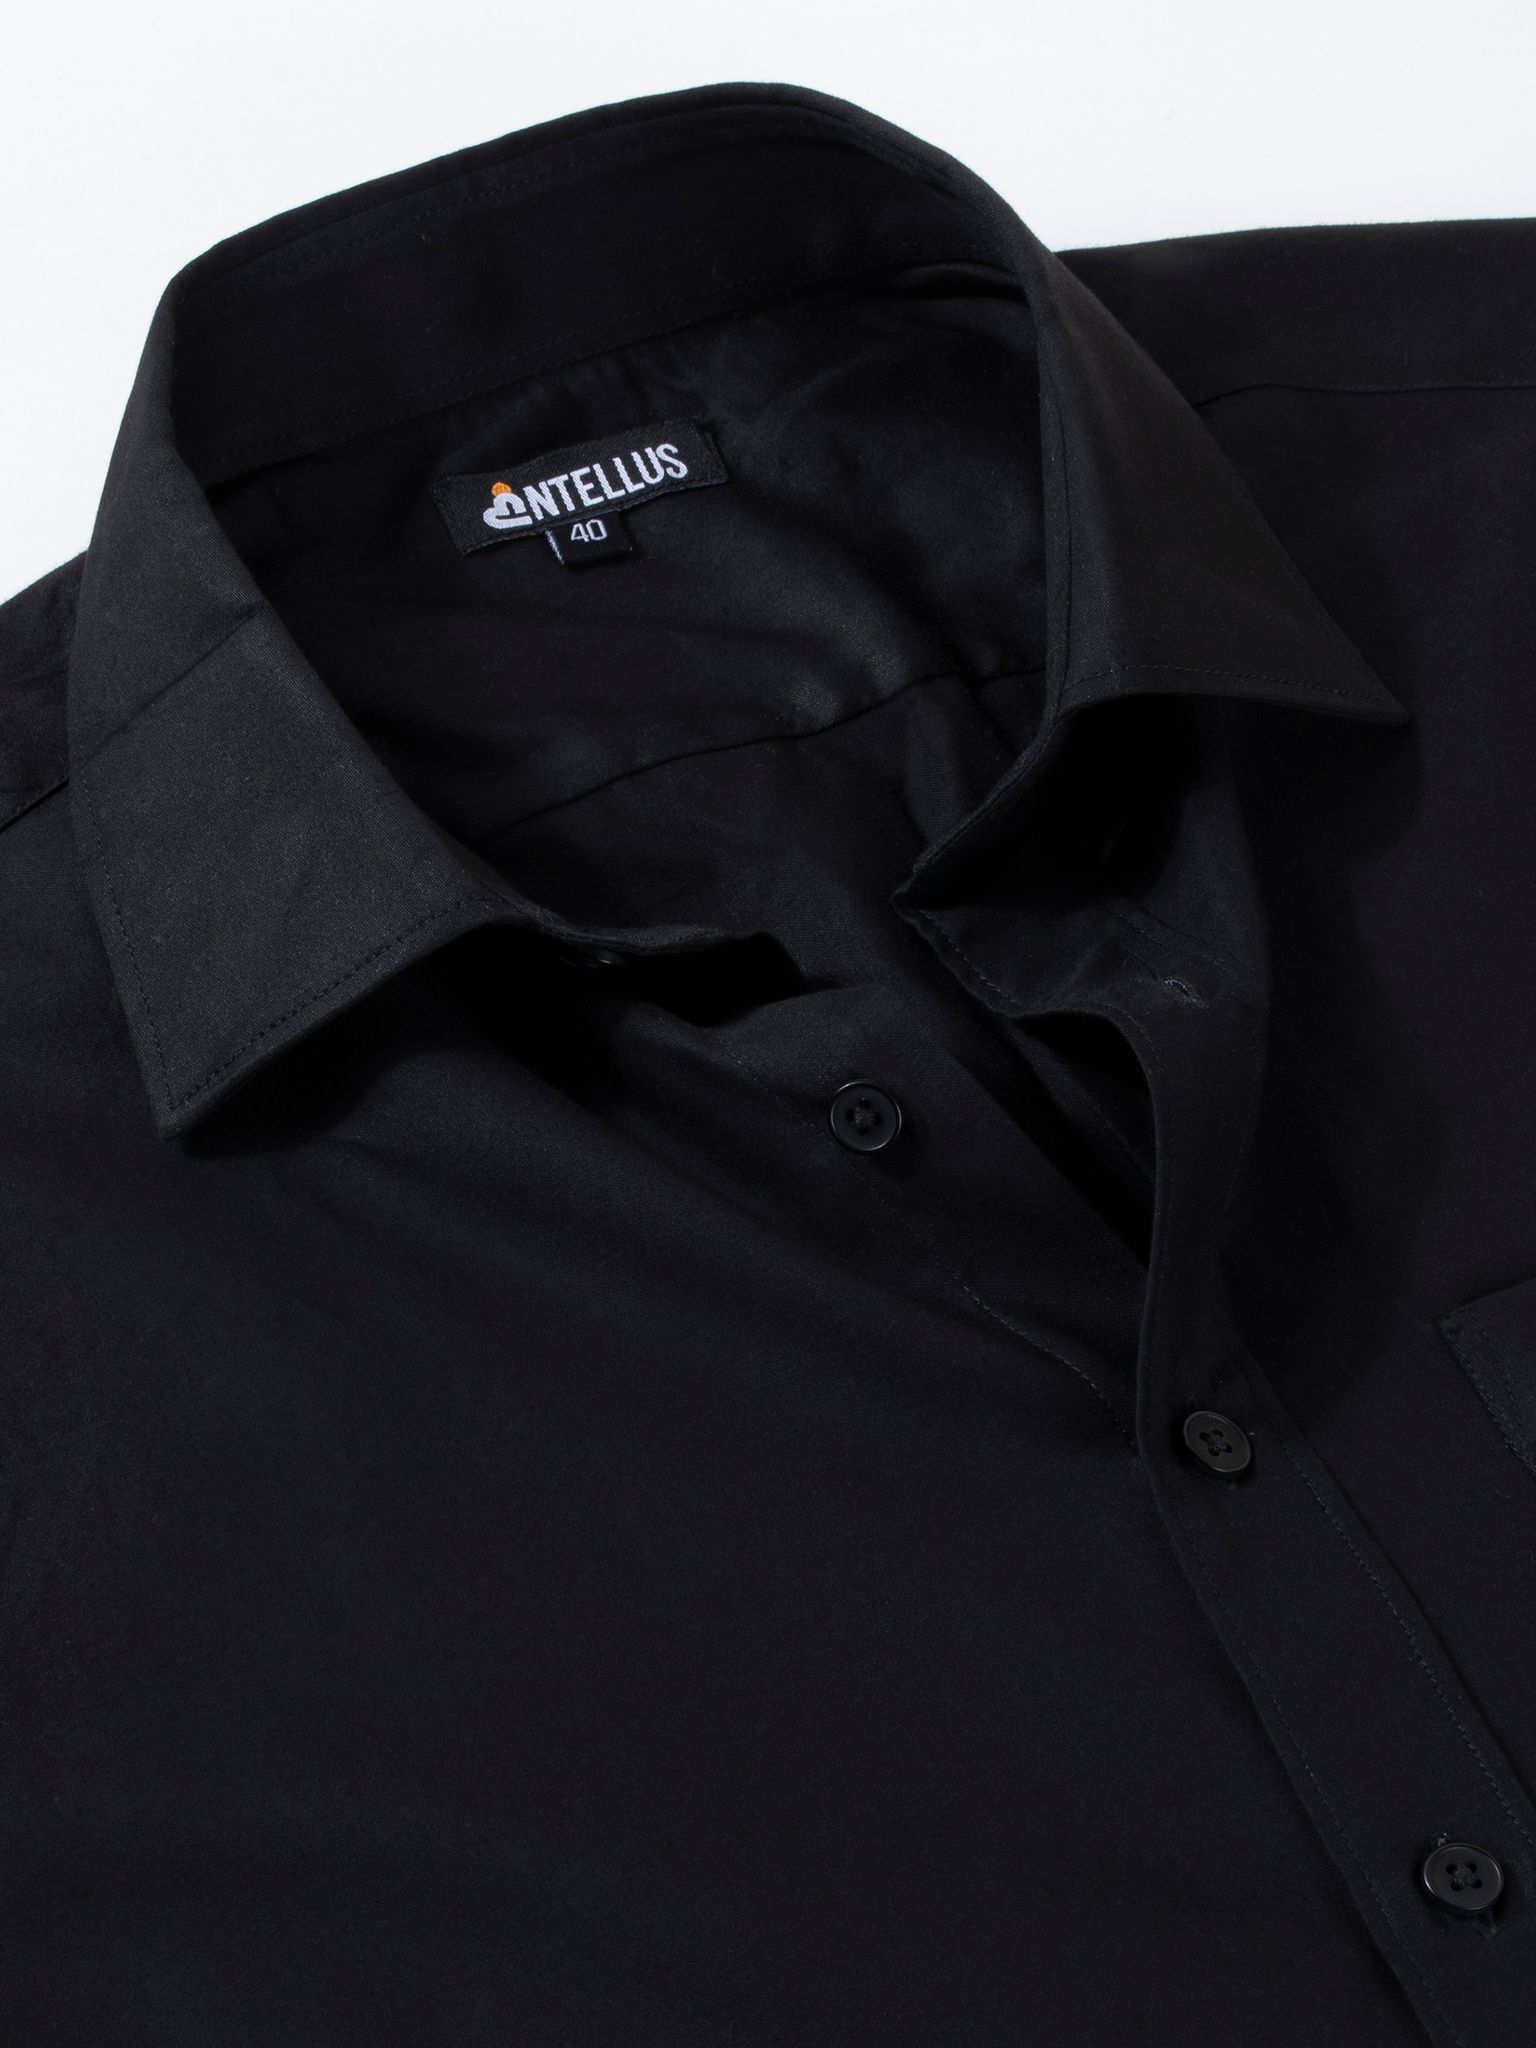 Entellus | Men's Slim Fit Shirt Black Color